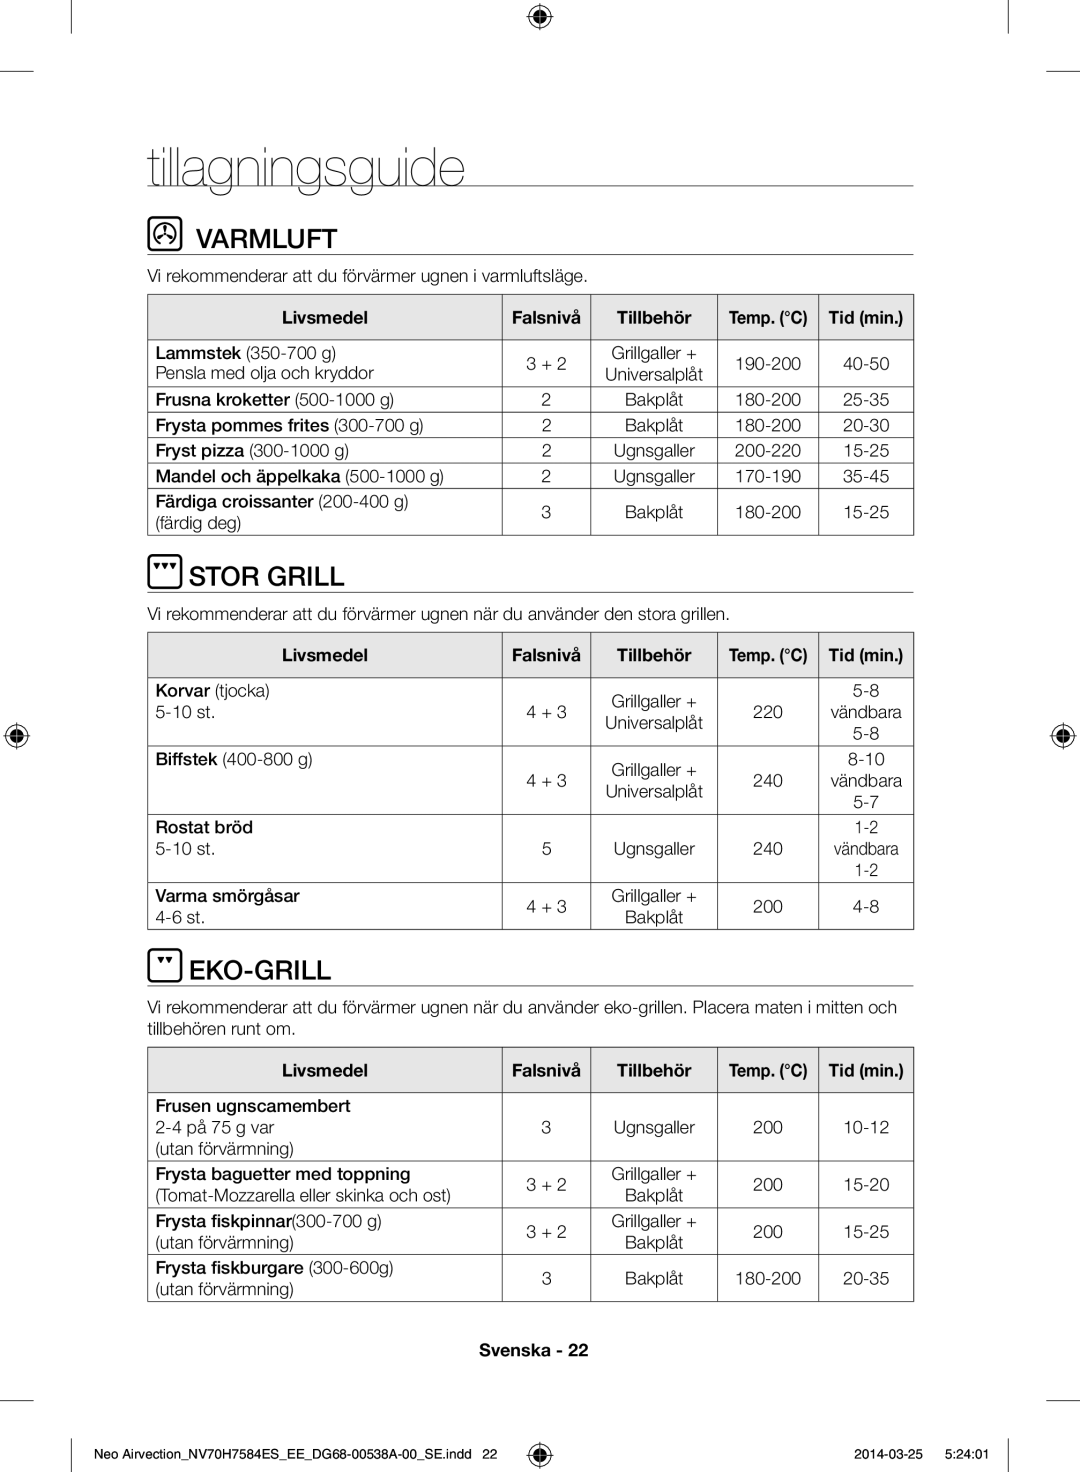 Samsung NV70H7584ES/EE manual Tillagningsguide, Varmluft, Stor grill, Eko-grill, Livsmedel Falsnivå Tillbehör 